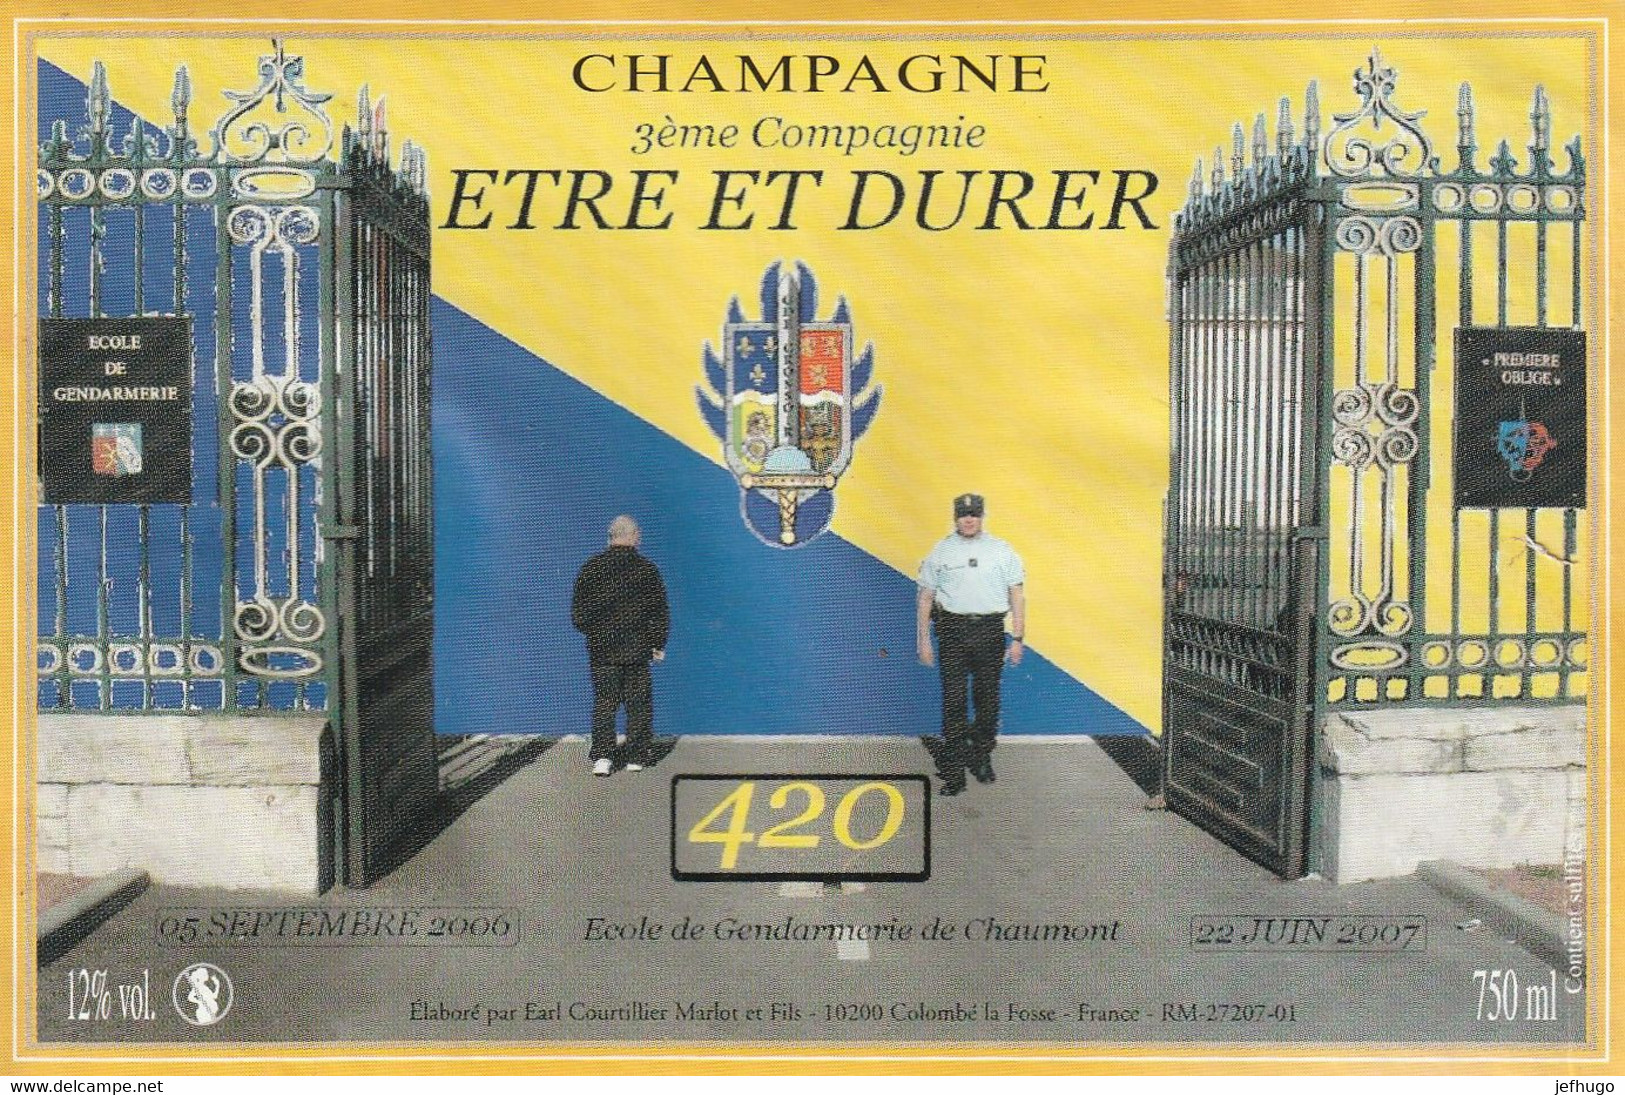 1096 - ETIQUETTE CHAMPAGNE ECOLE GENDARMERIE CHAUMONT . SEPTEMBRE 2000 . 3ème Cie ETRE ET DURER JOLI DECORS - Champagne